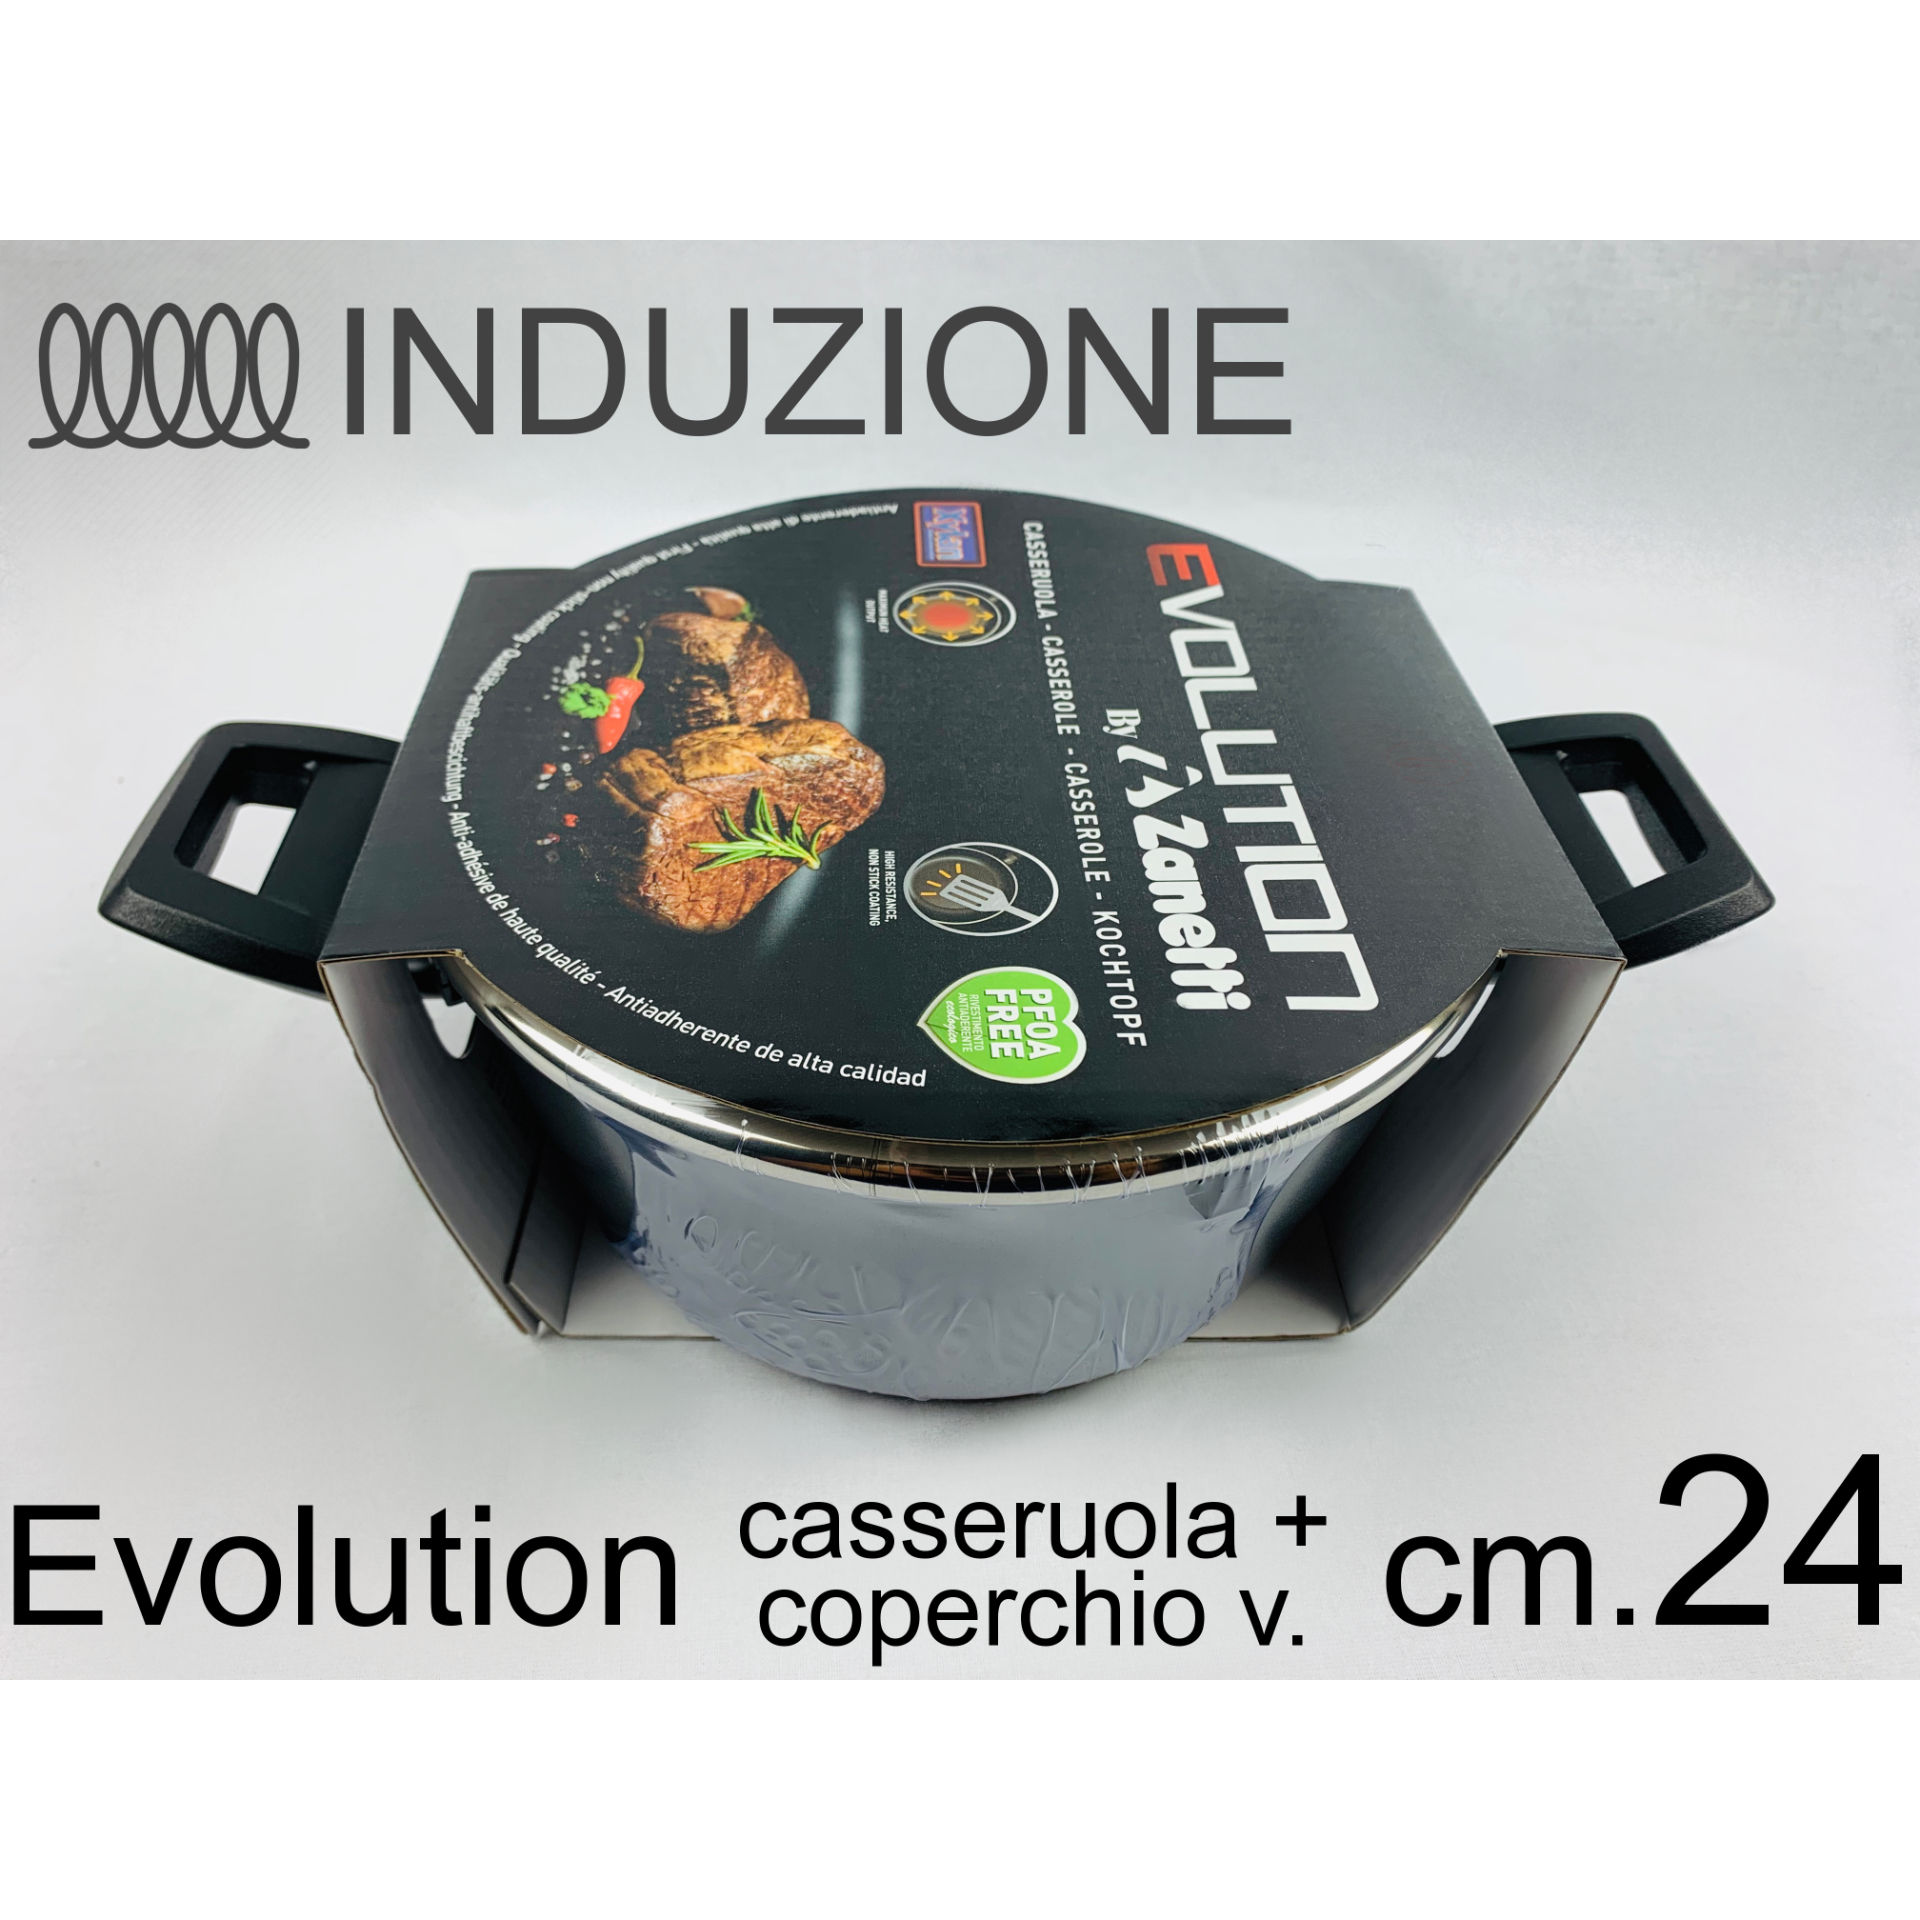 CASSERUOLA CM 24 EVOLUTION C/COP.Zanetti